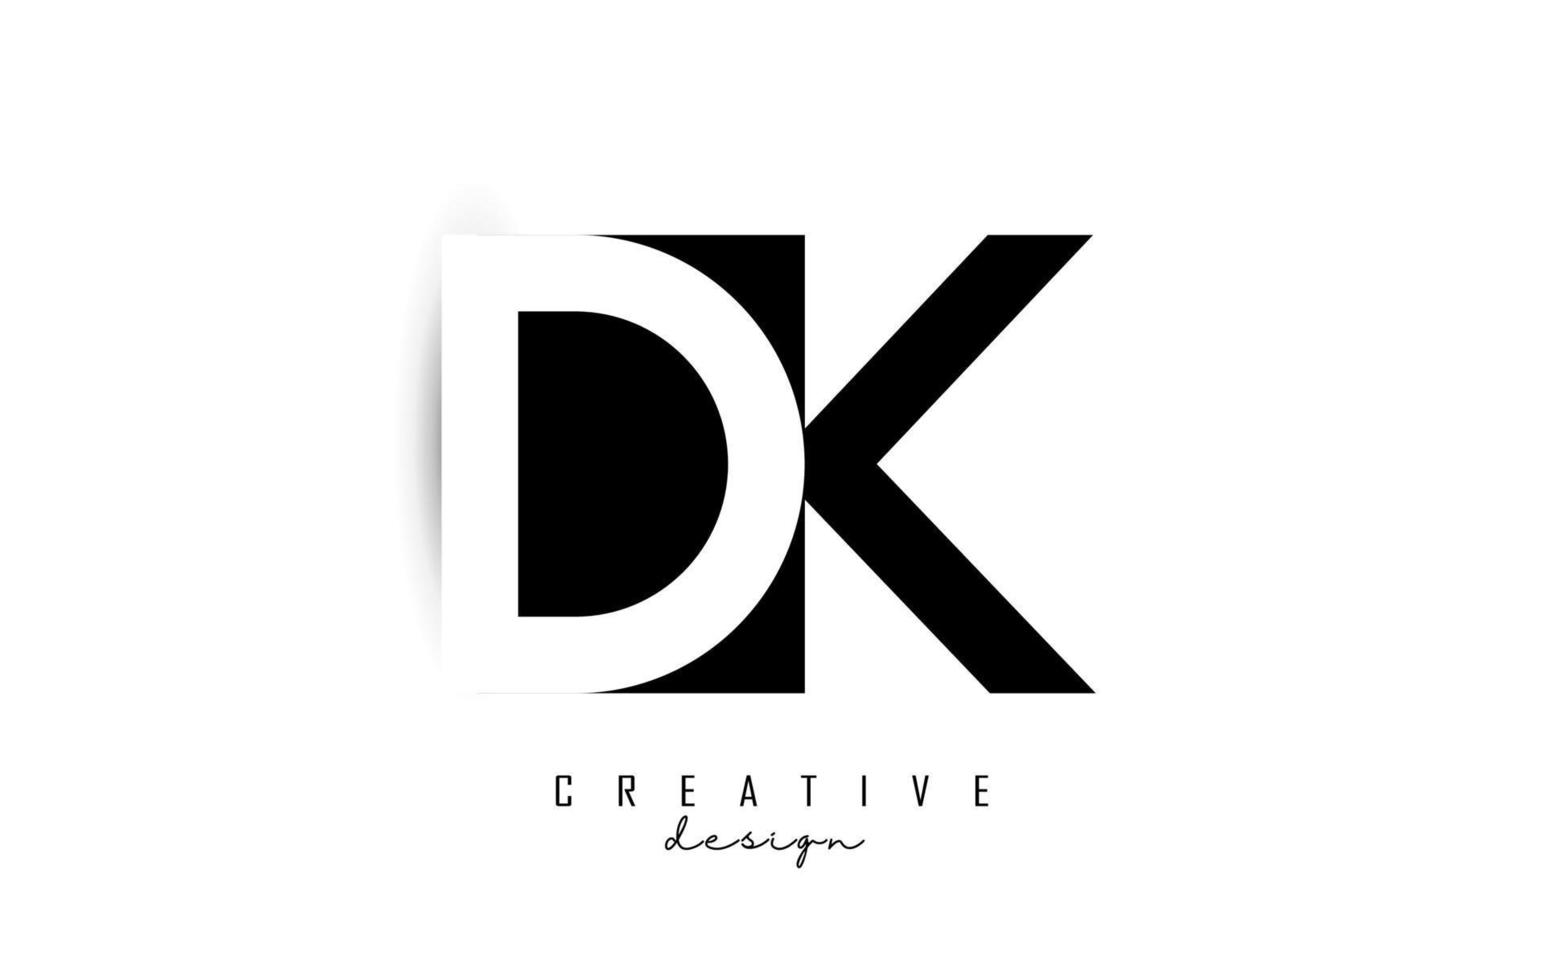 Buchstaben dk Logo mit schwarz-weißem Negativraumdesign. Buchstaben d und k mit geometrischer Typografie. vektor